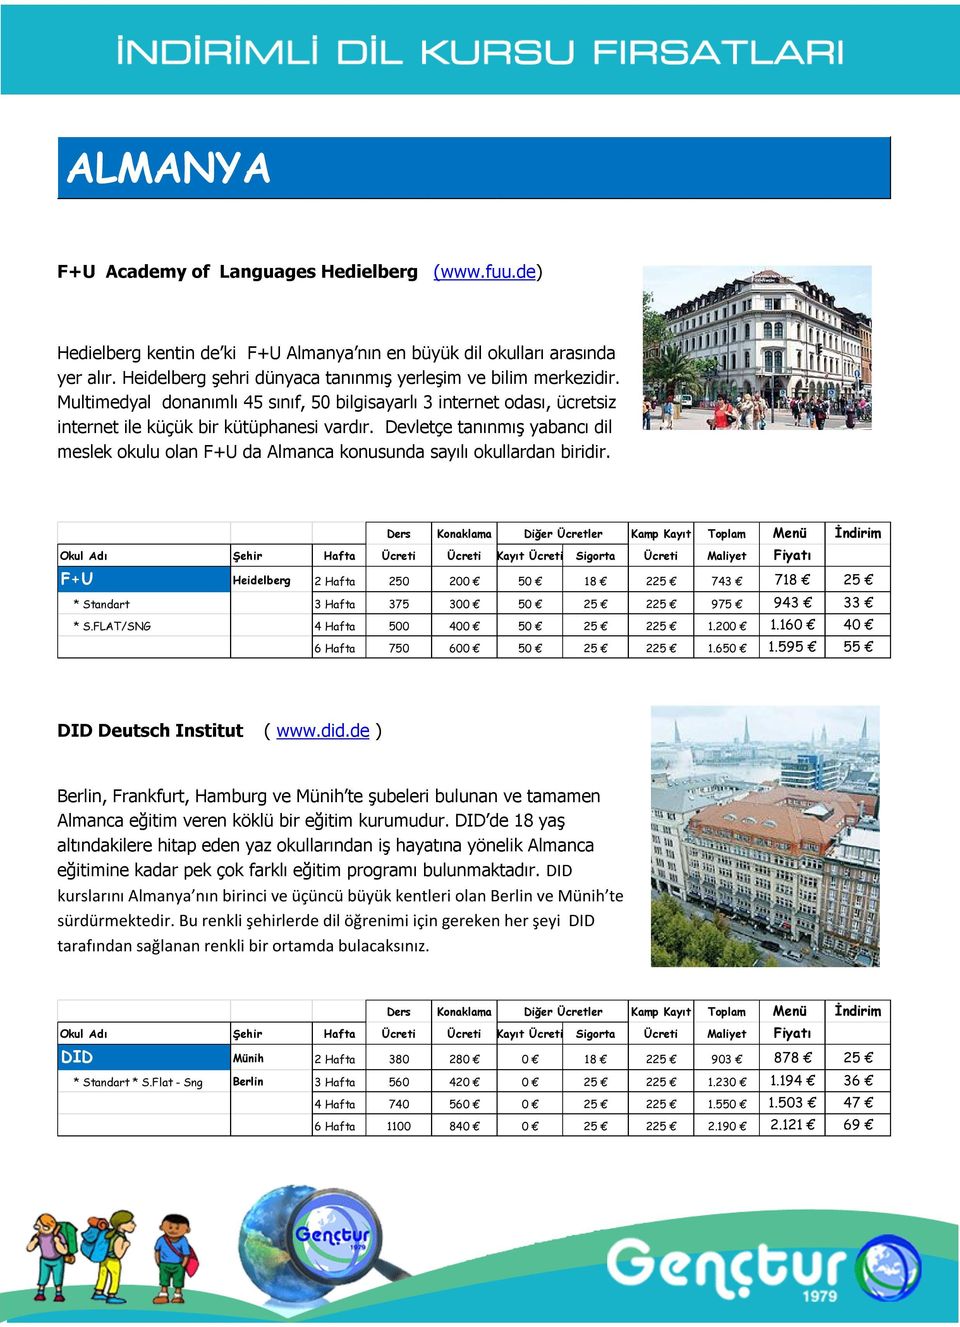 Devletçe tanınmış yabancı dil meslek okulu olan F+U da Almanca konusunda sayılı okullardan biridir. F+U Heidelberg 2 Hafta 250 200 50 18 743 718 25 * Standart 3 Hafta 375 300 50 25 975 943 33 * S.